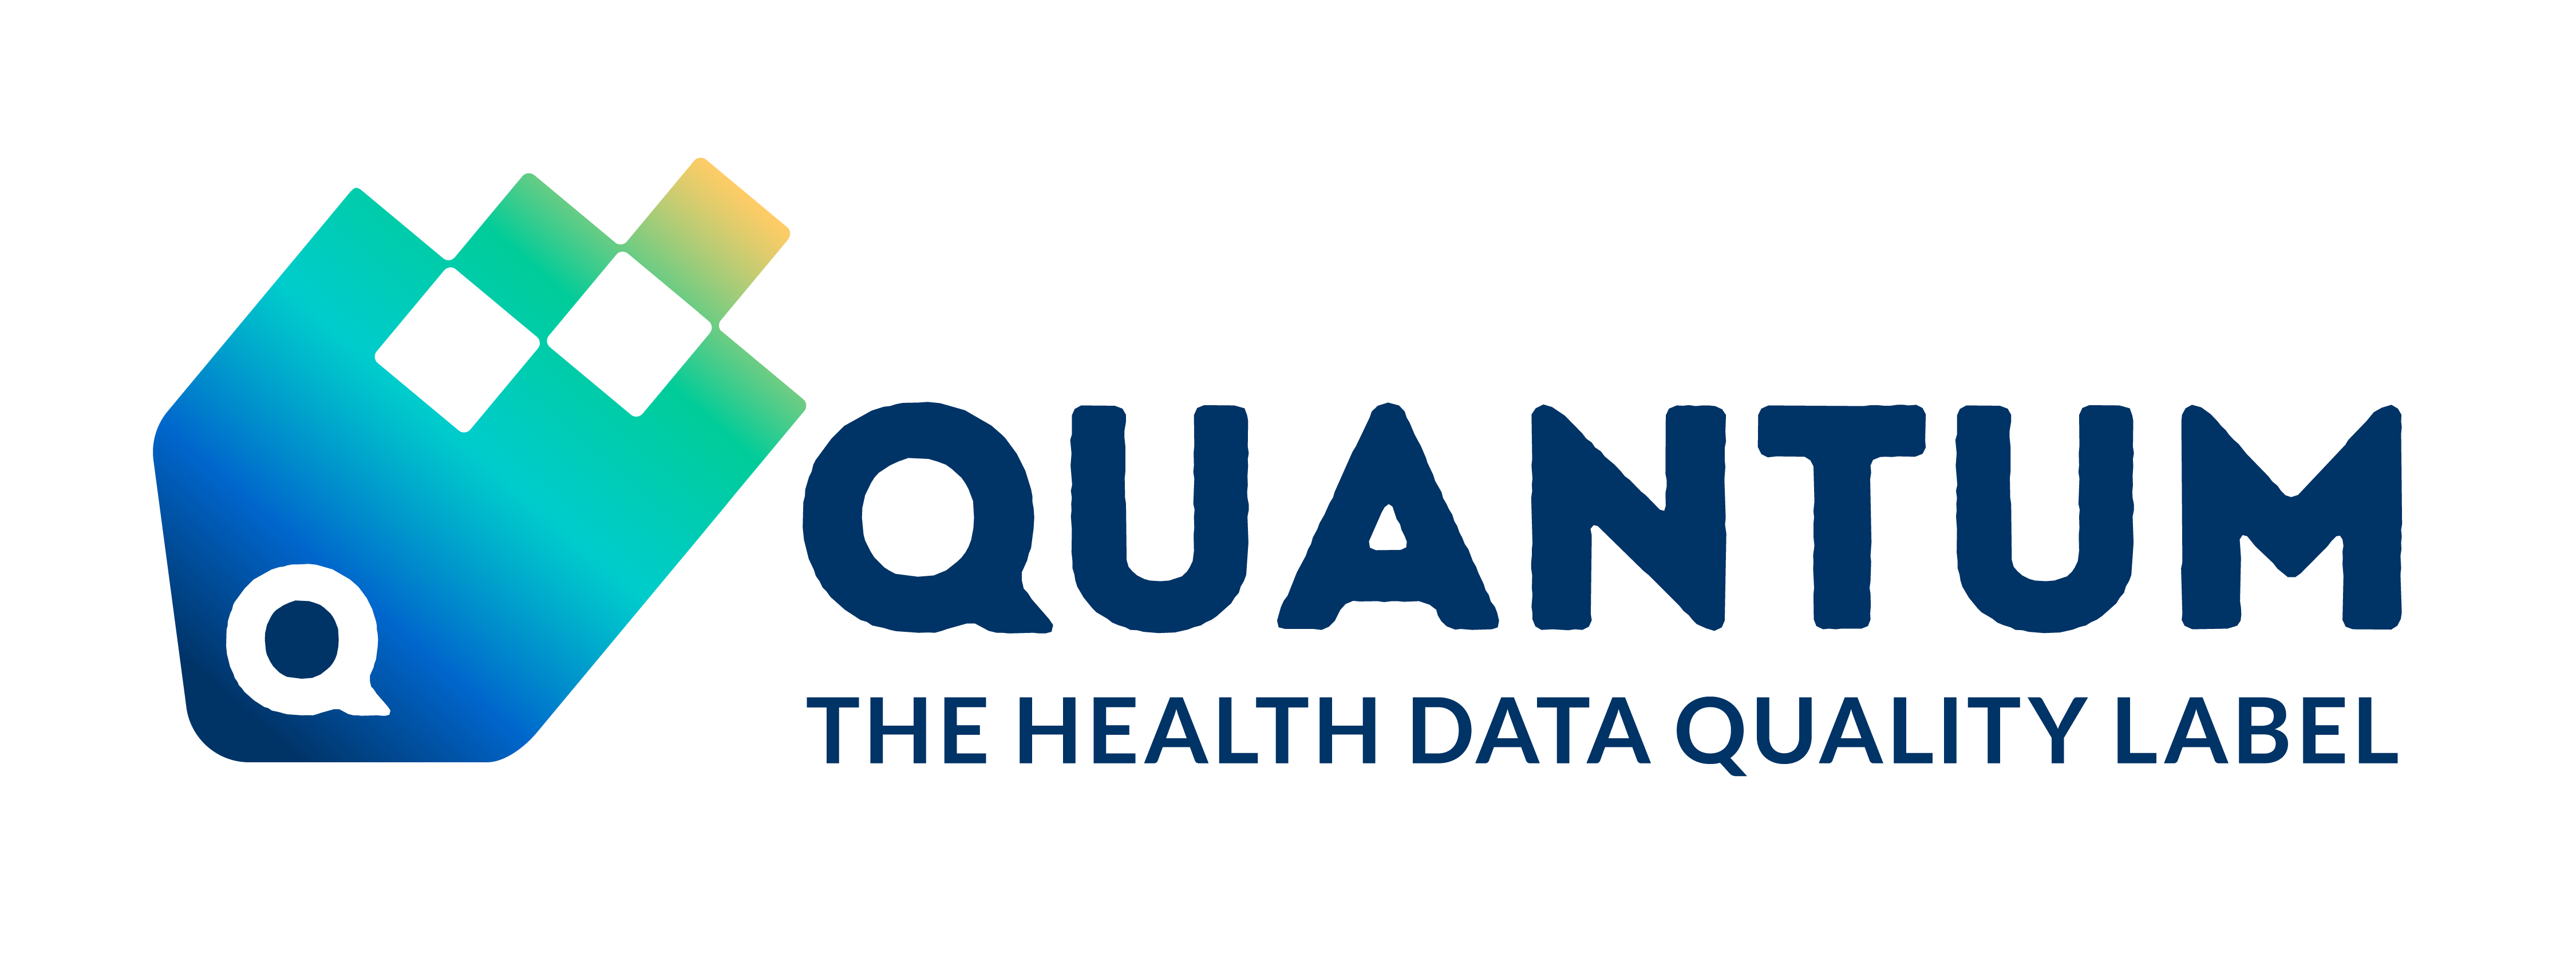 Logotipo Quantum horizontal